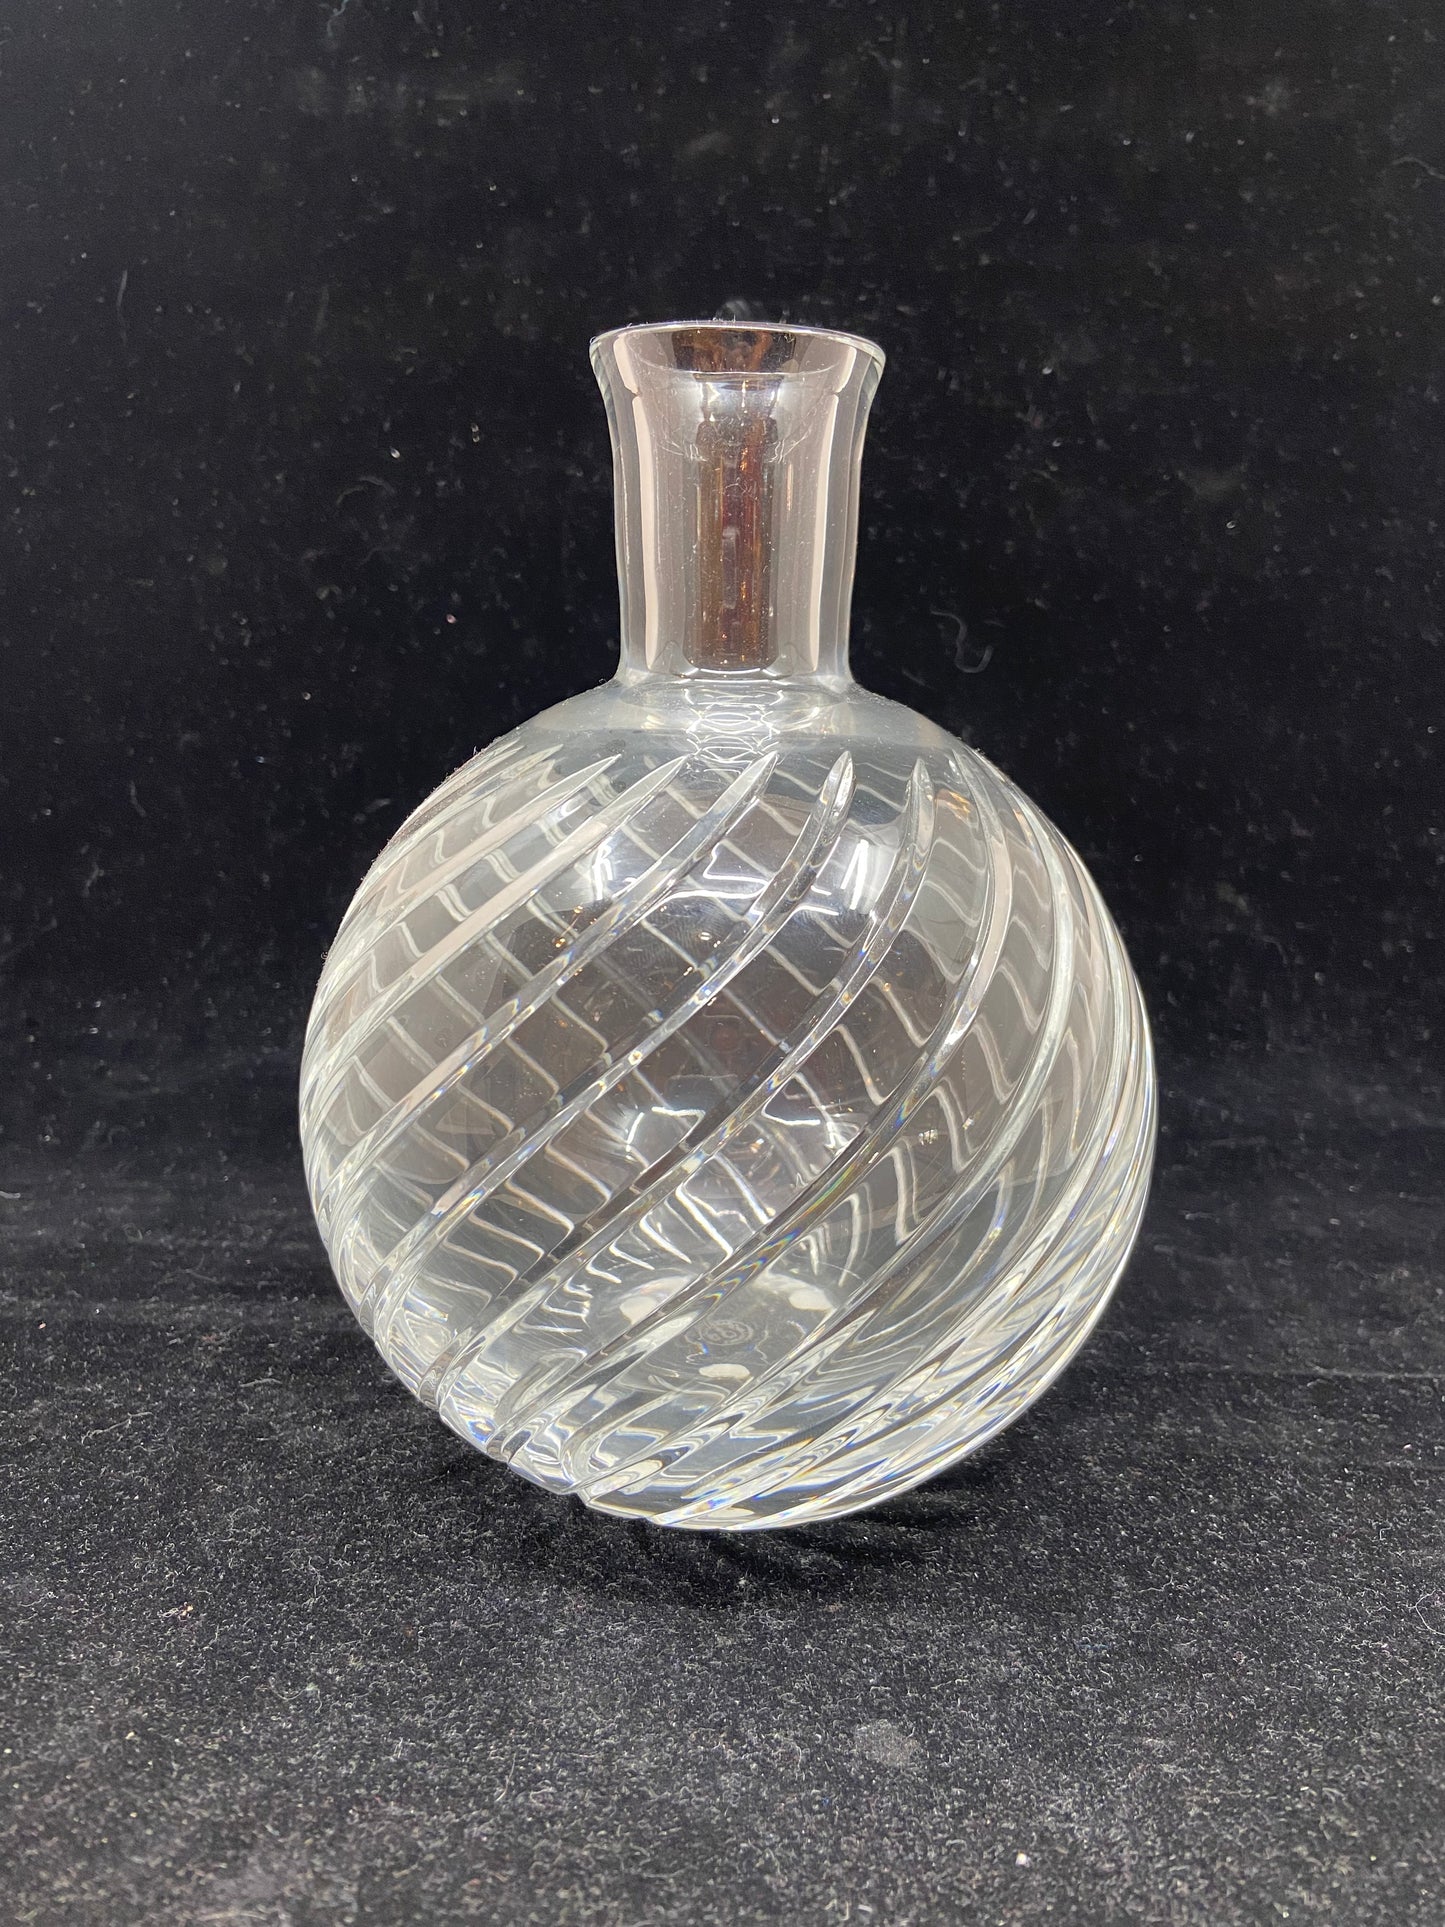 Cyclades Vase (24501)